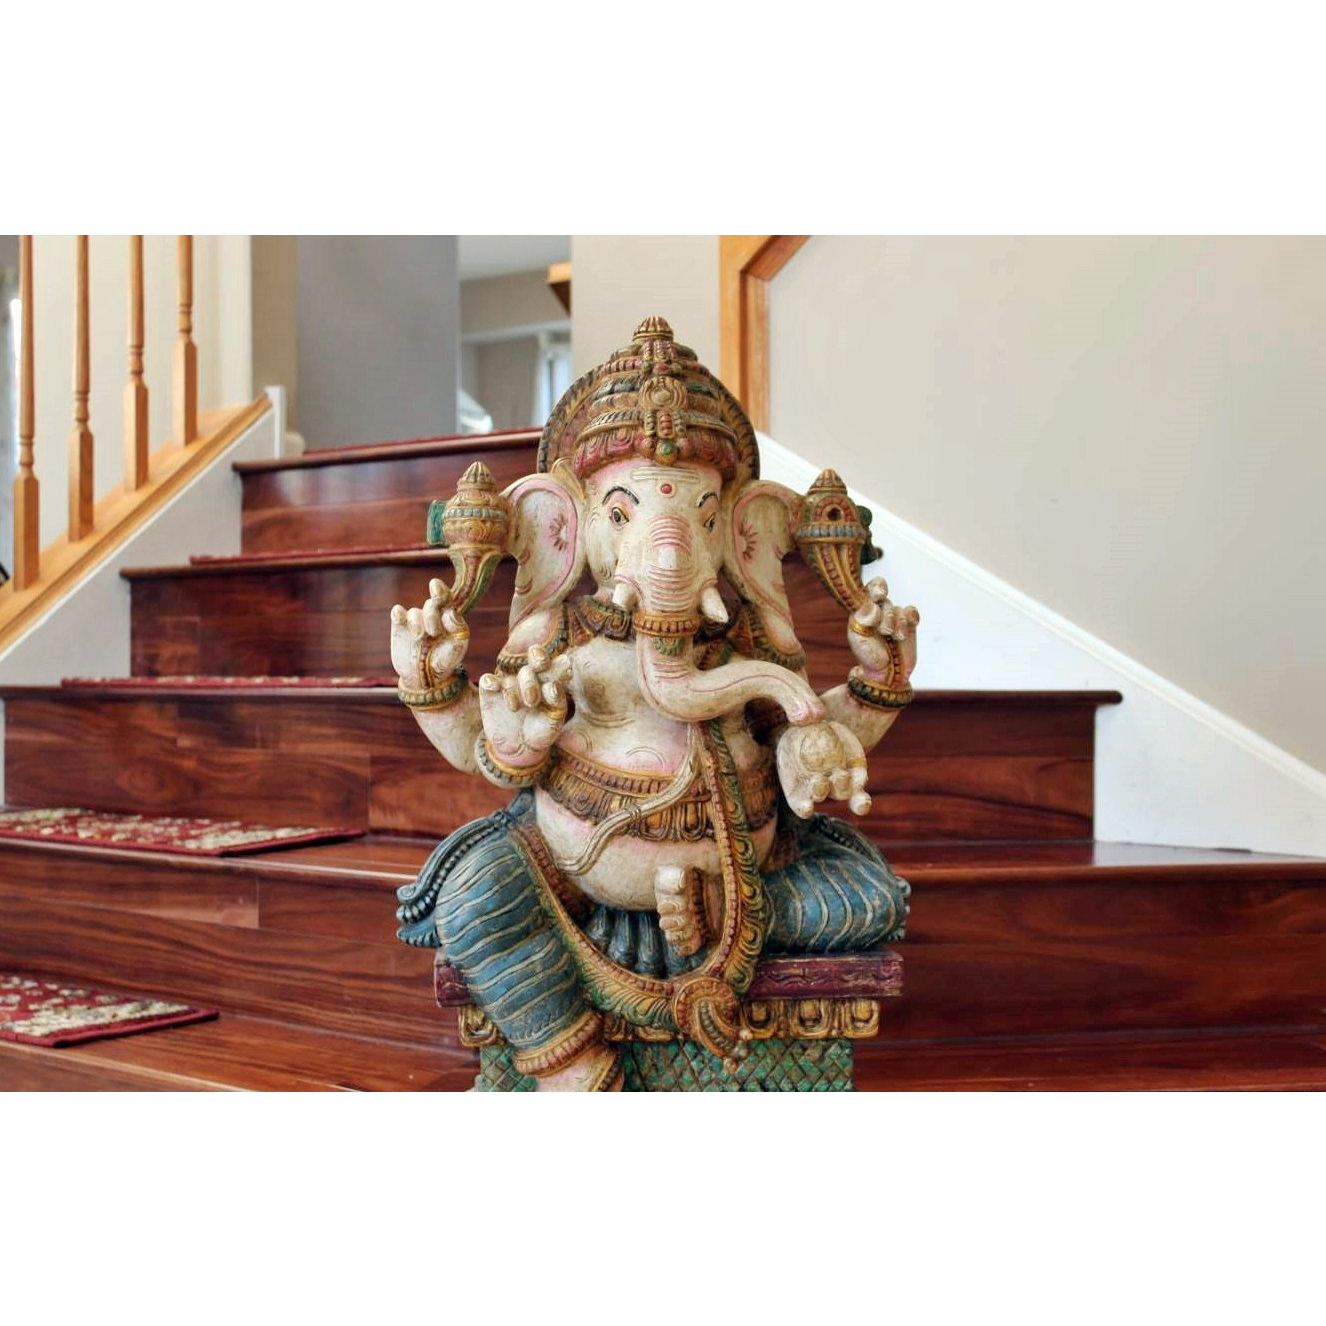 Hindu God Ganesha Big Statue - 3 Ft tall Handmade Antique looking